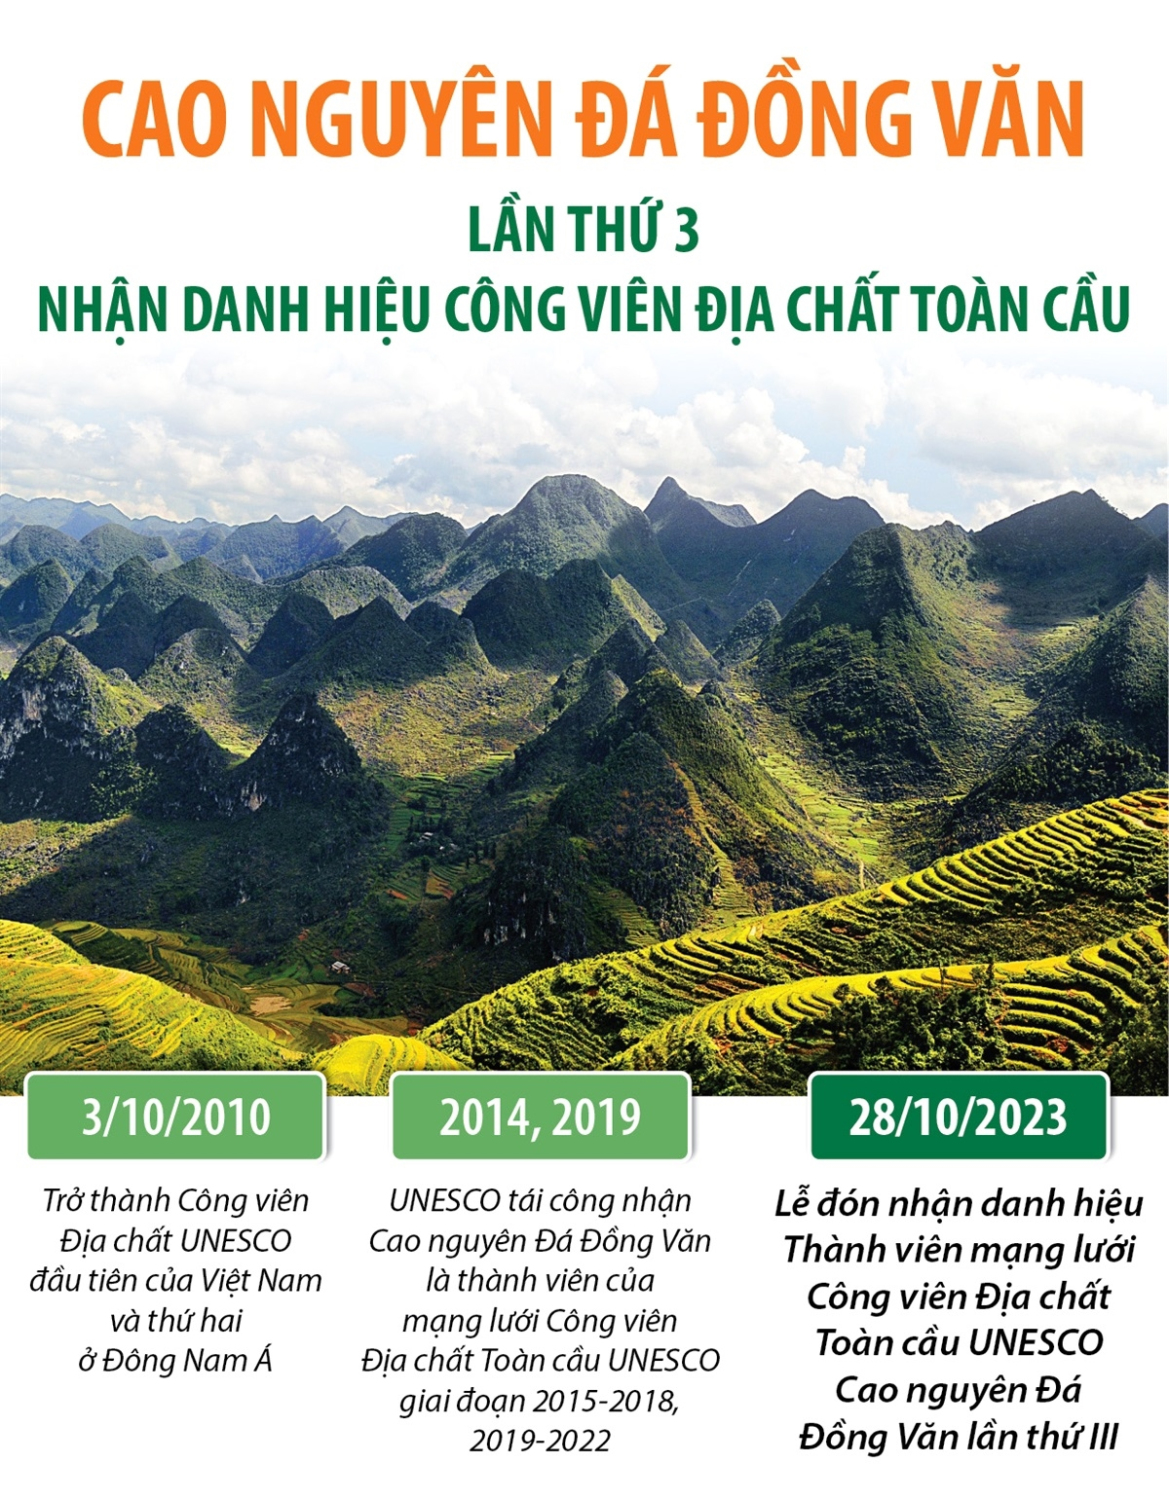 Hà Giang: Cao nguyên Đá Đồng Văn lần thứ 3 nhận danh hiệu Công viên Địa chất Toàn cầu